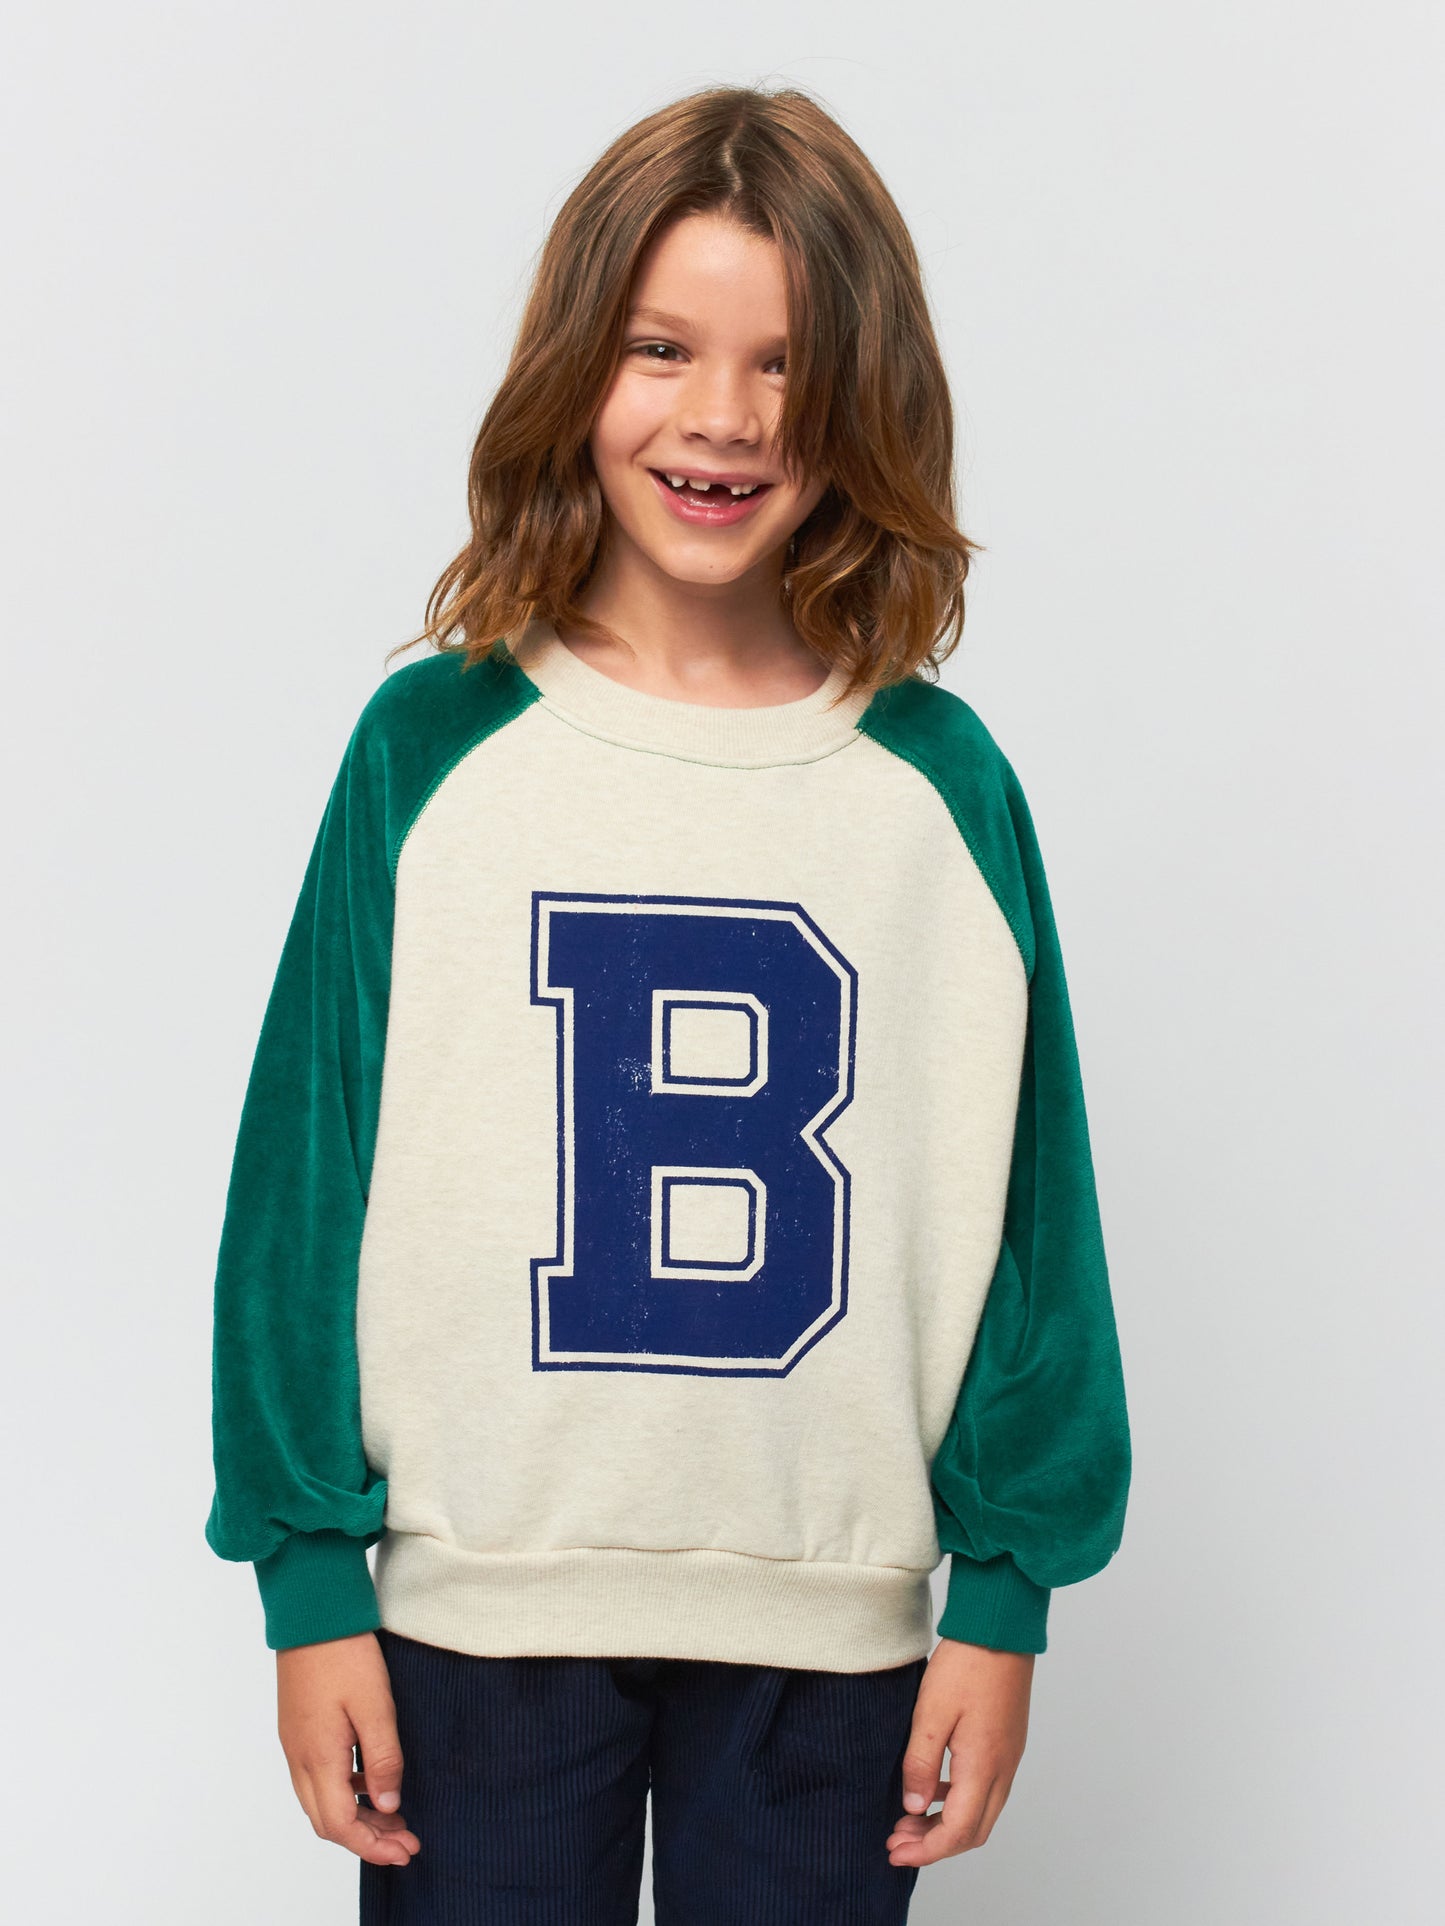 BC raglan sleeves sweatshirt